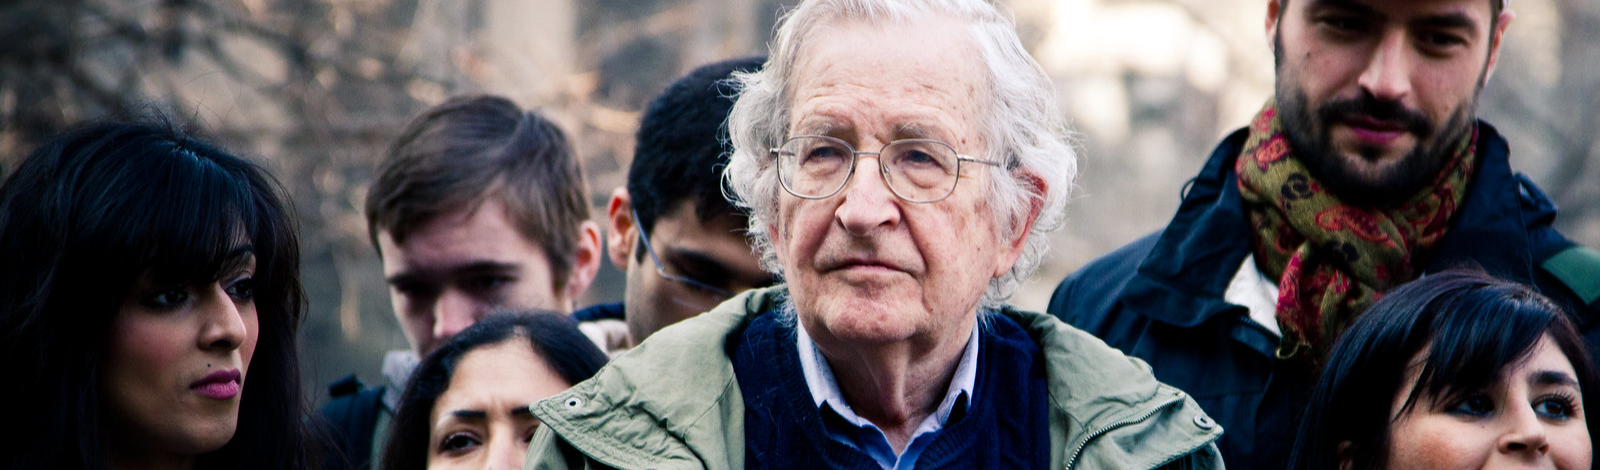 Chomsky avisa: América Latina pode se libertar da influência dos EUA